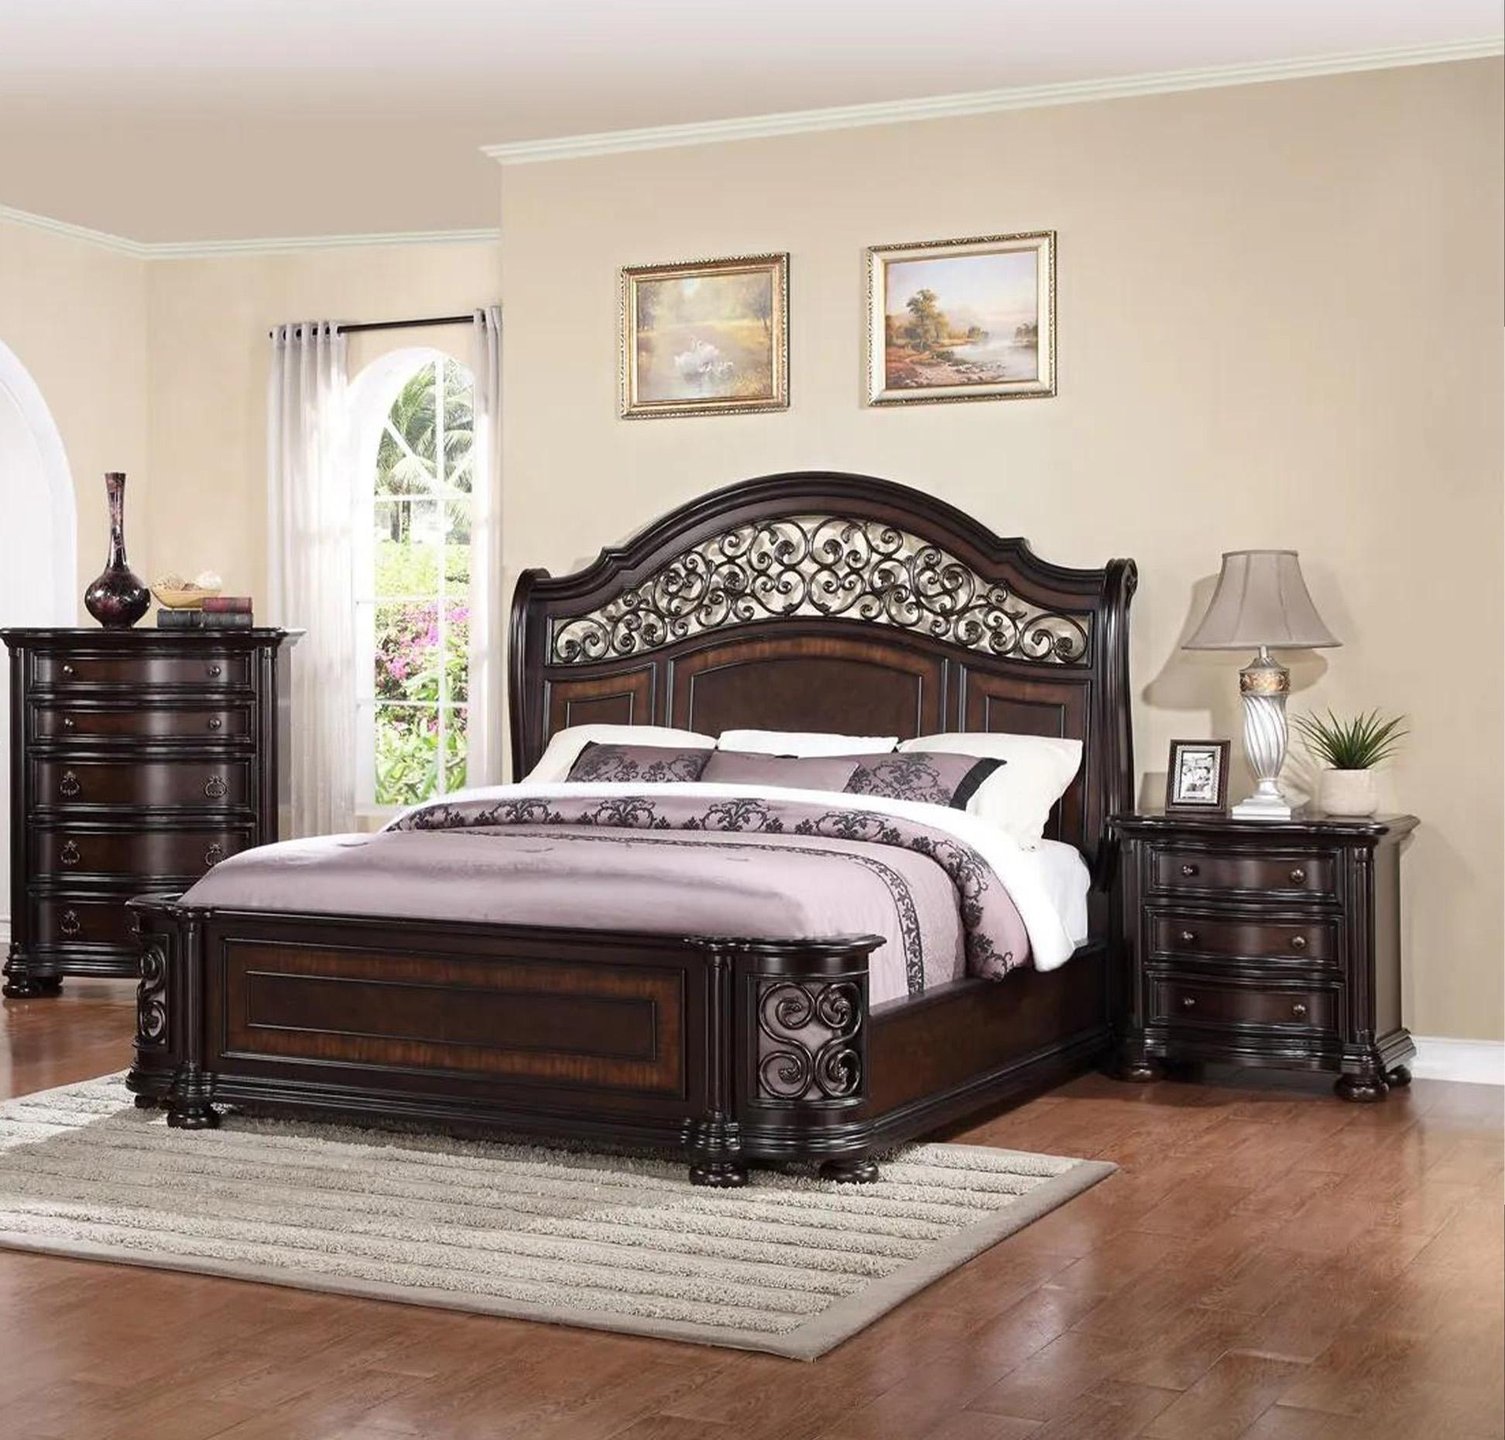 bedroom furniture sets - king & queen size bedroom sets